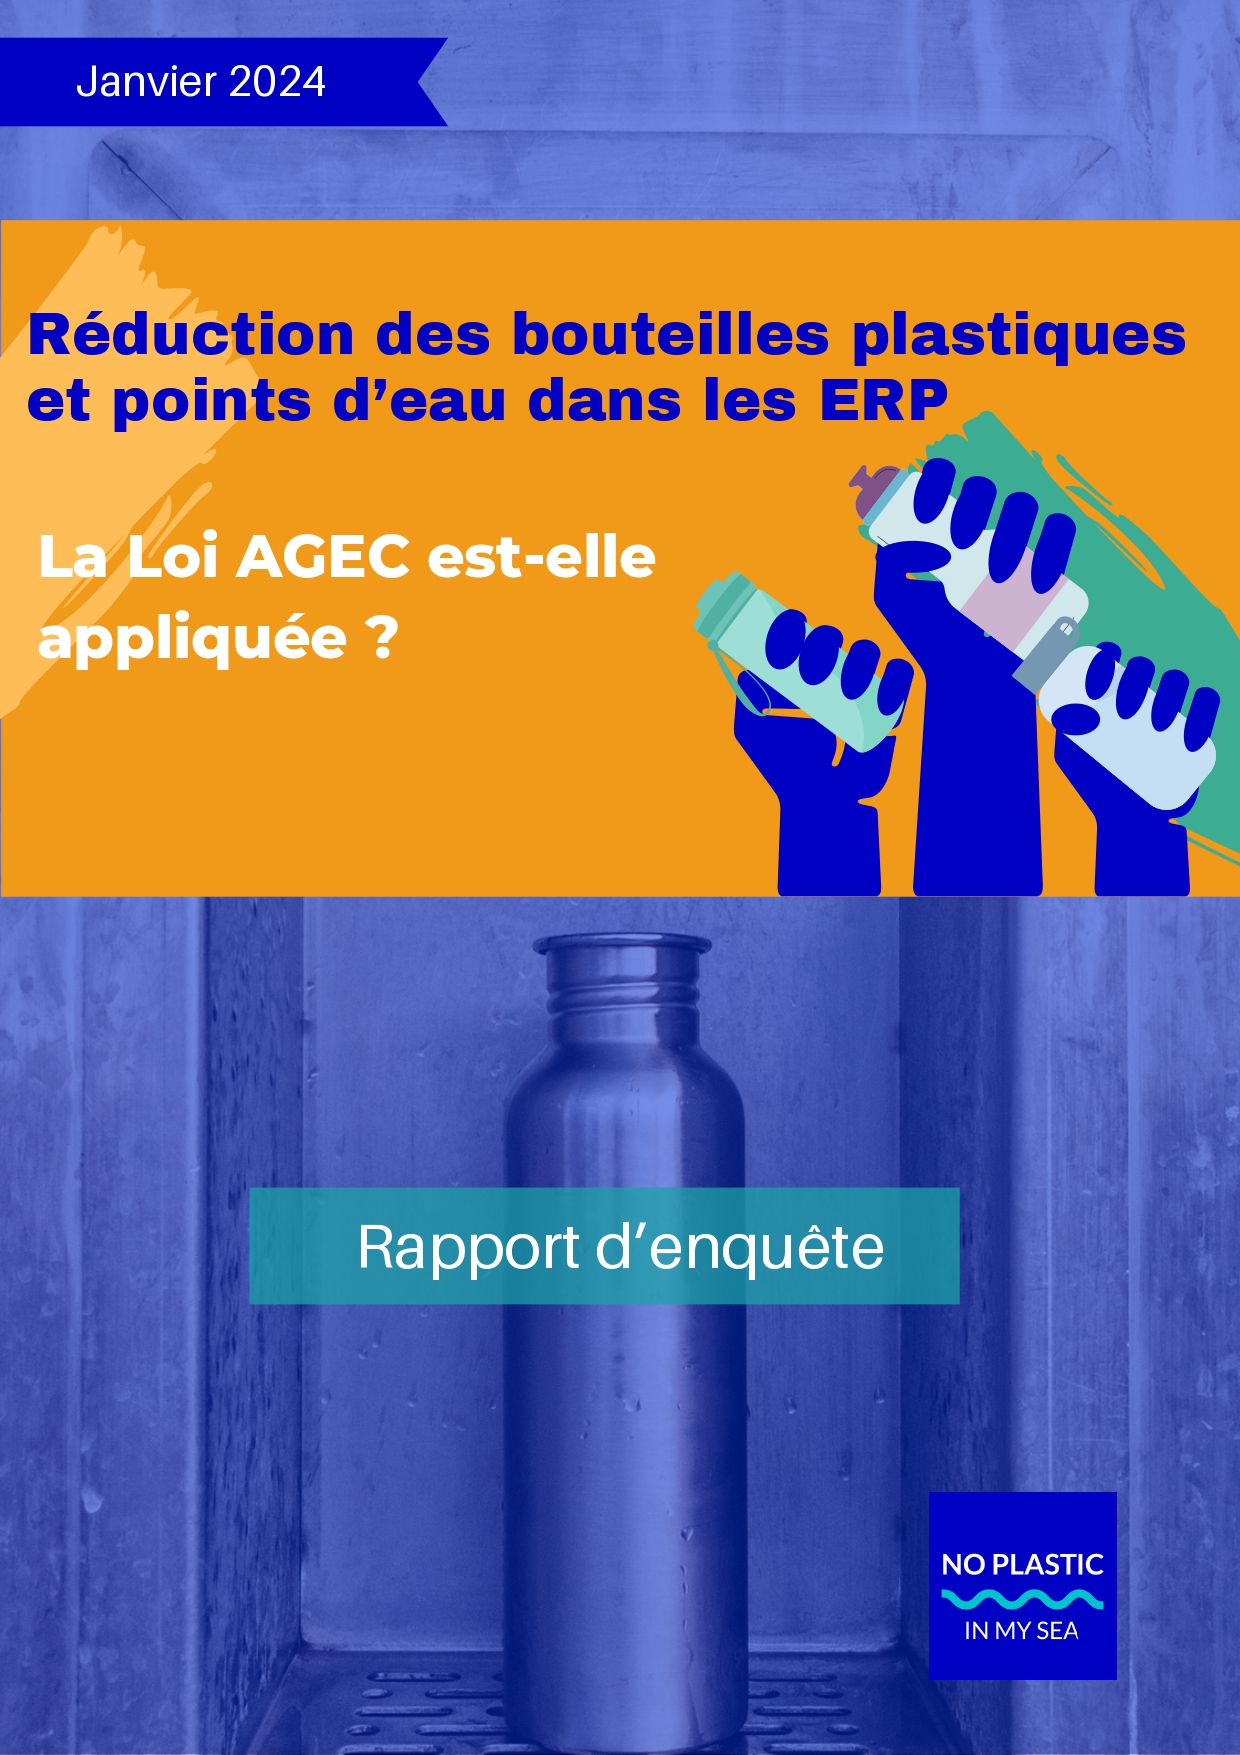 Réduction des bouteilles plastiques et déploiement de points d'eau : 2 ans de retard pour la loi AGEC